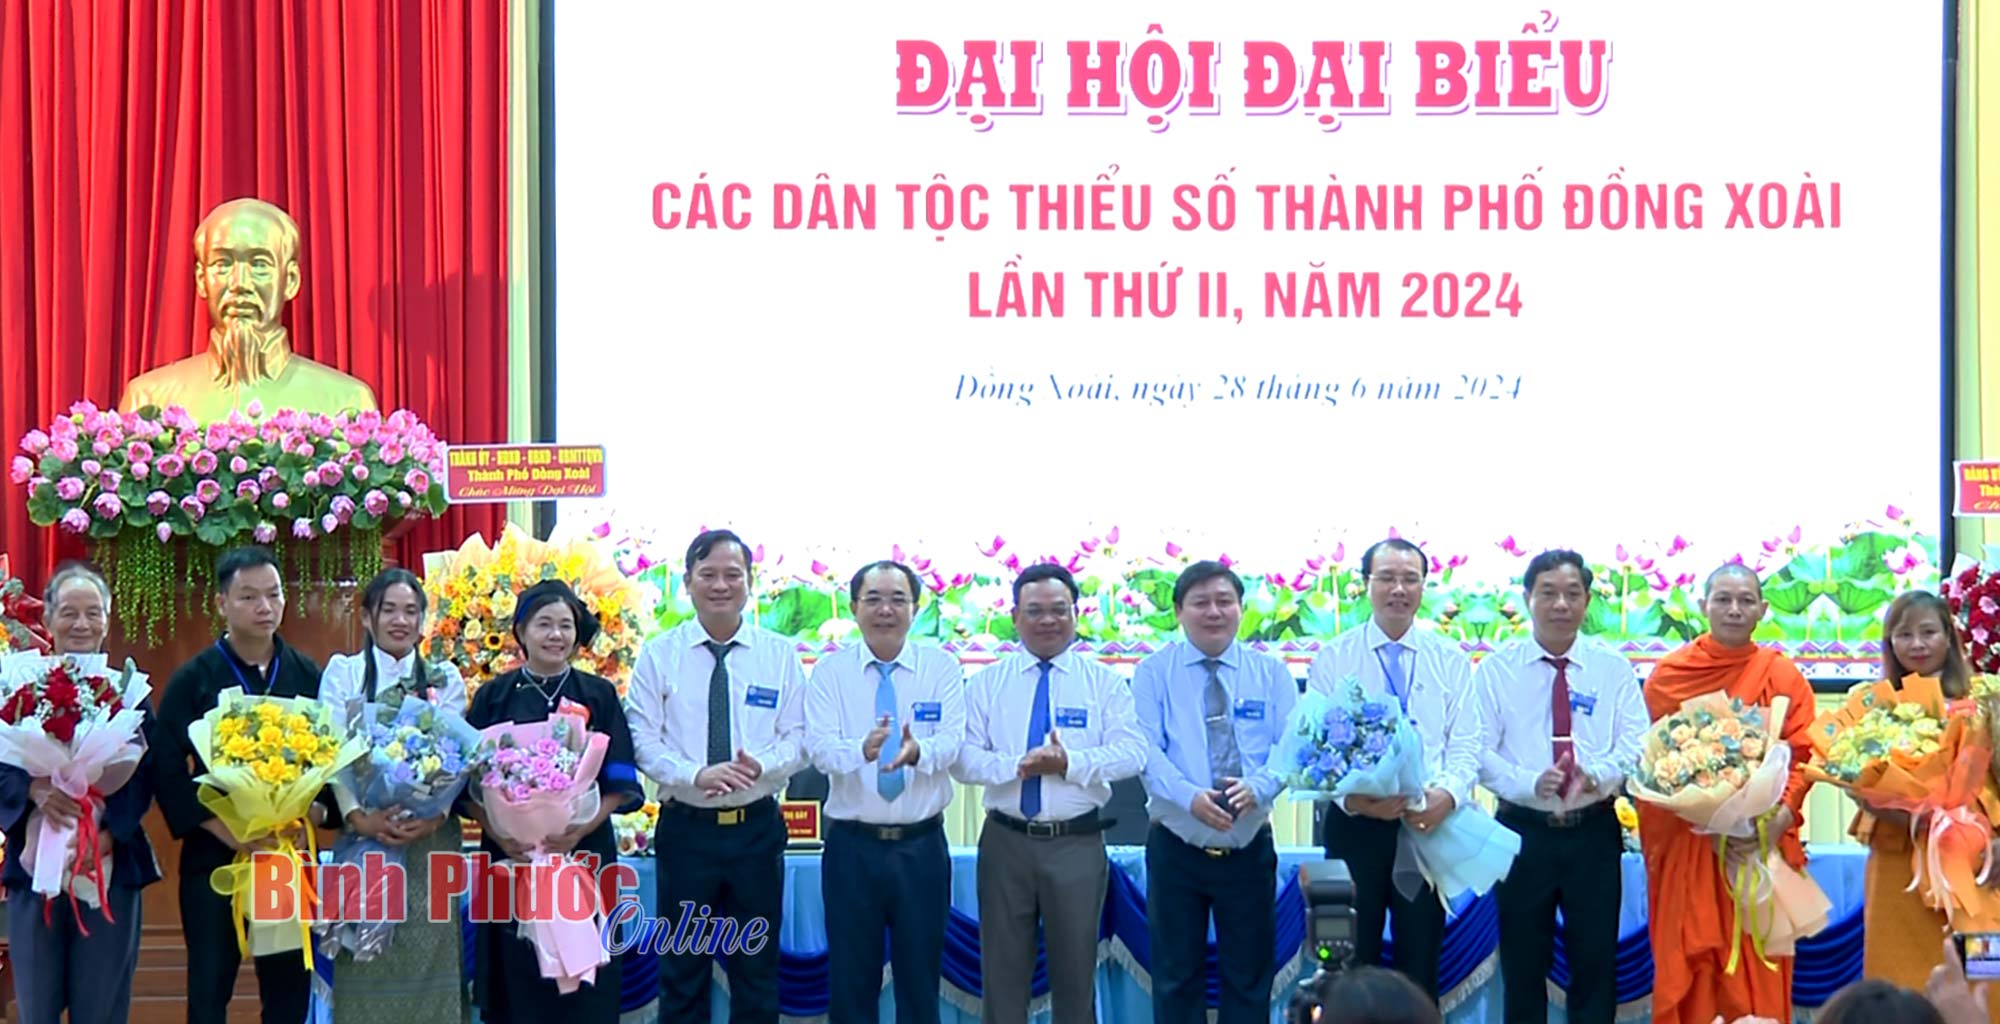 Đại hội đại biểu các dân tộc thiểu số thành phố Đồng Xoài lần thứ II, năm 2024